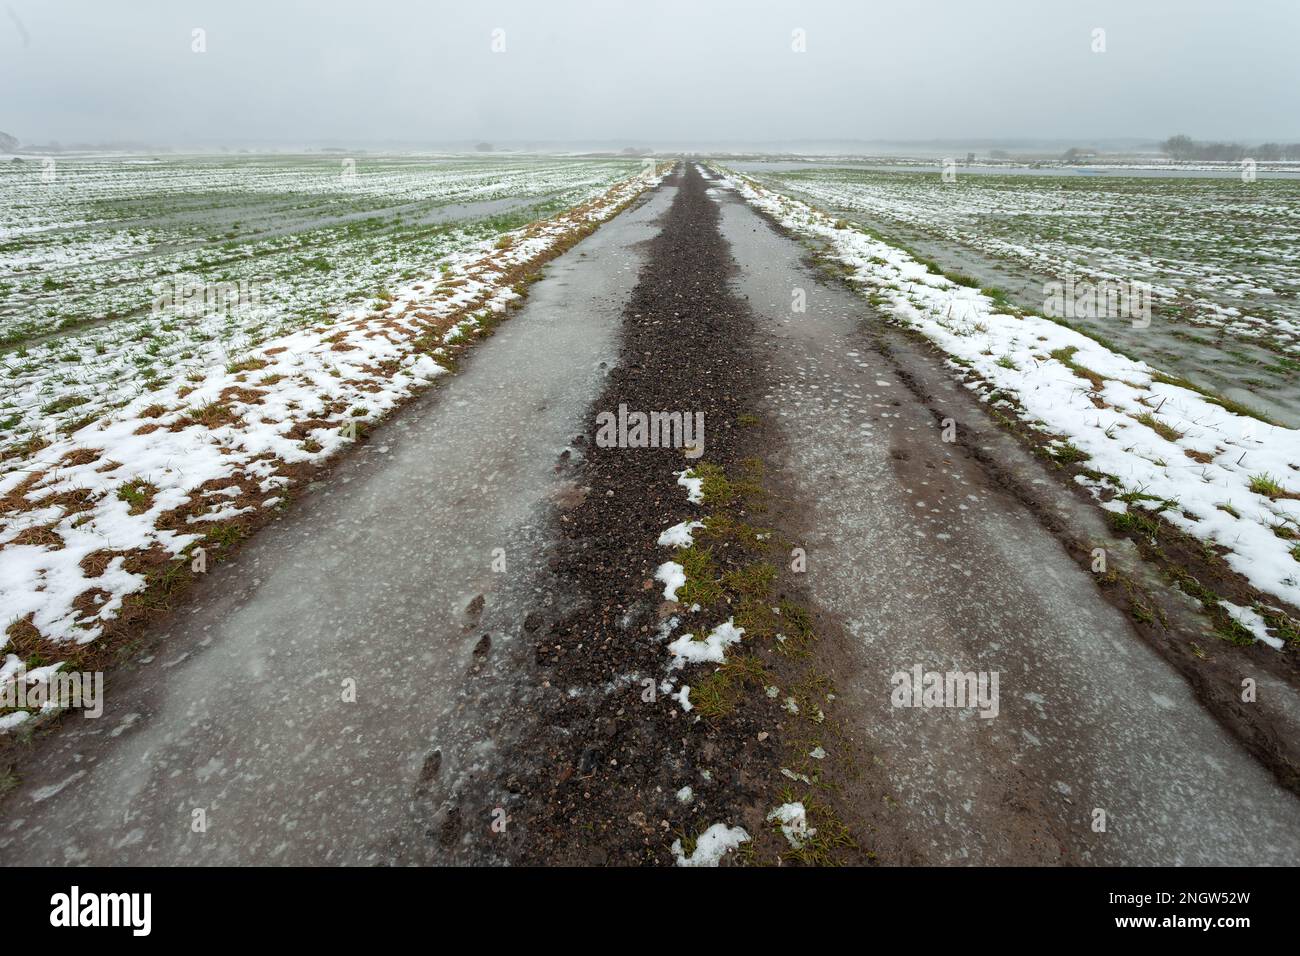 Route de terre glacée à travers les champs avec de la neige et de l'eau, vue sur un jour brumeux, Czulczyce, Pologne Banque D'Images